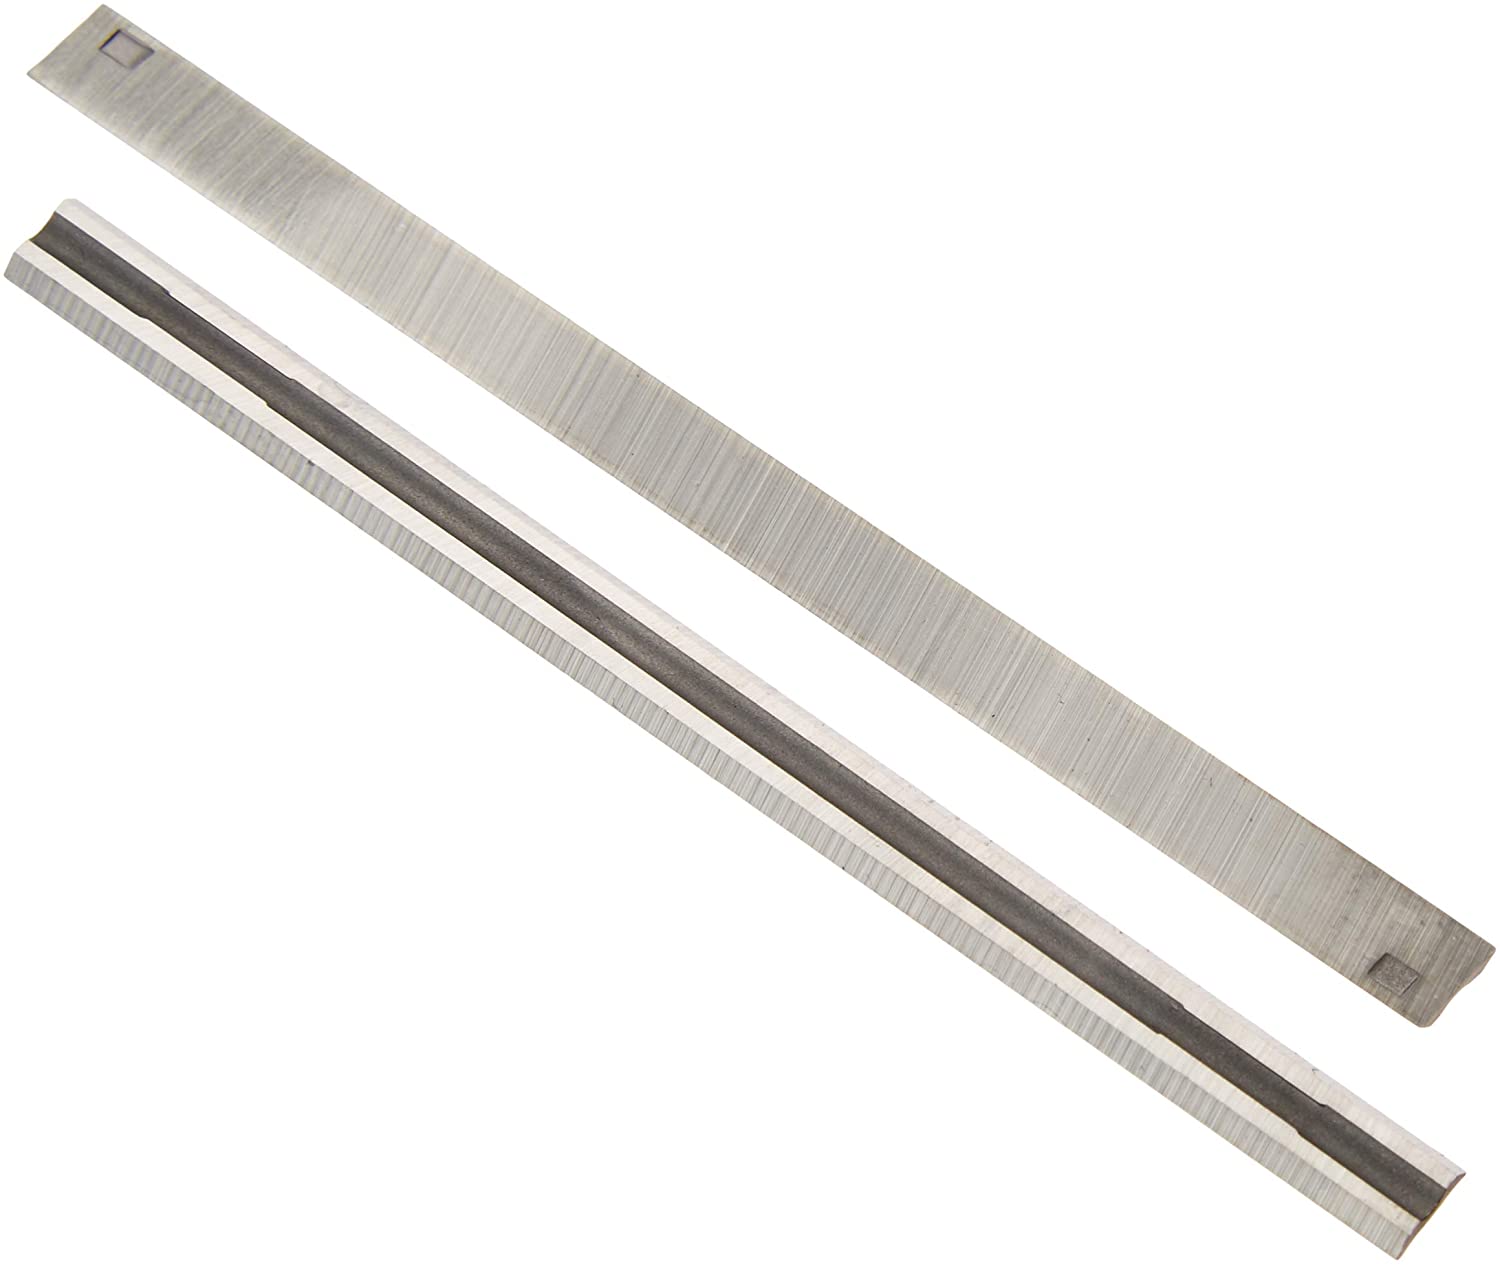 71uhZIJb TL. AC SL1500 Woodrazor Tungsten Carbide Planer Blades (2 Pcs.)